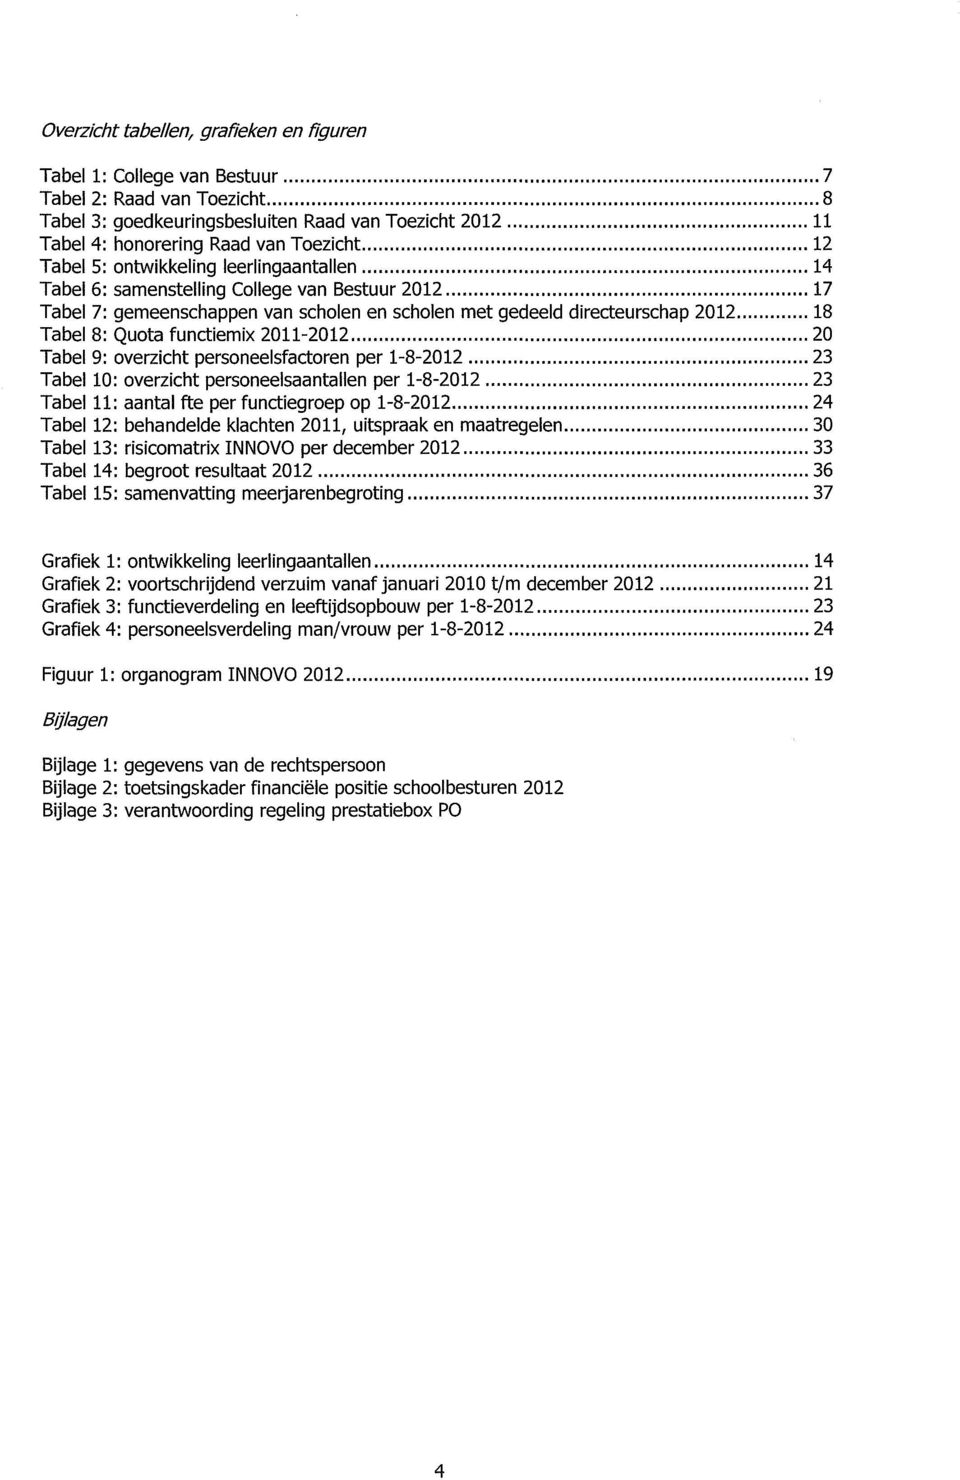 functiemix 2011-2012 20 Tabel 9: overzicht personeelsfactoren per 1-8-2012 23 Tabel 10: overzicht personeelsaantallen per 1-8-2012 23 Tabel 11: aantal fte per functiegroep op 1-8-2012 24 Tabel 12: